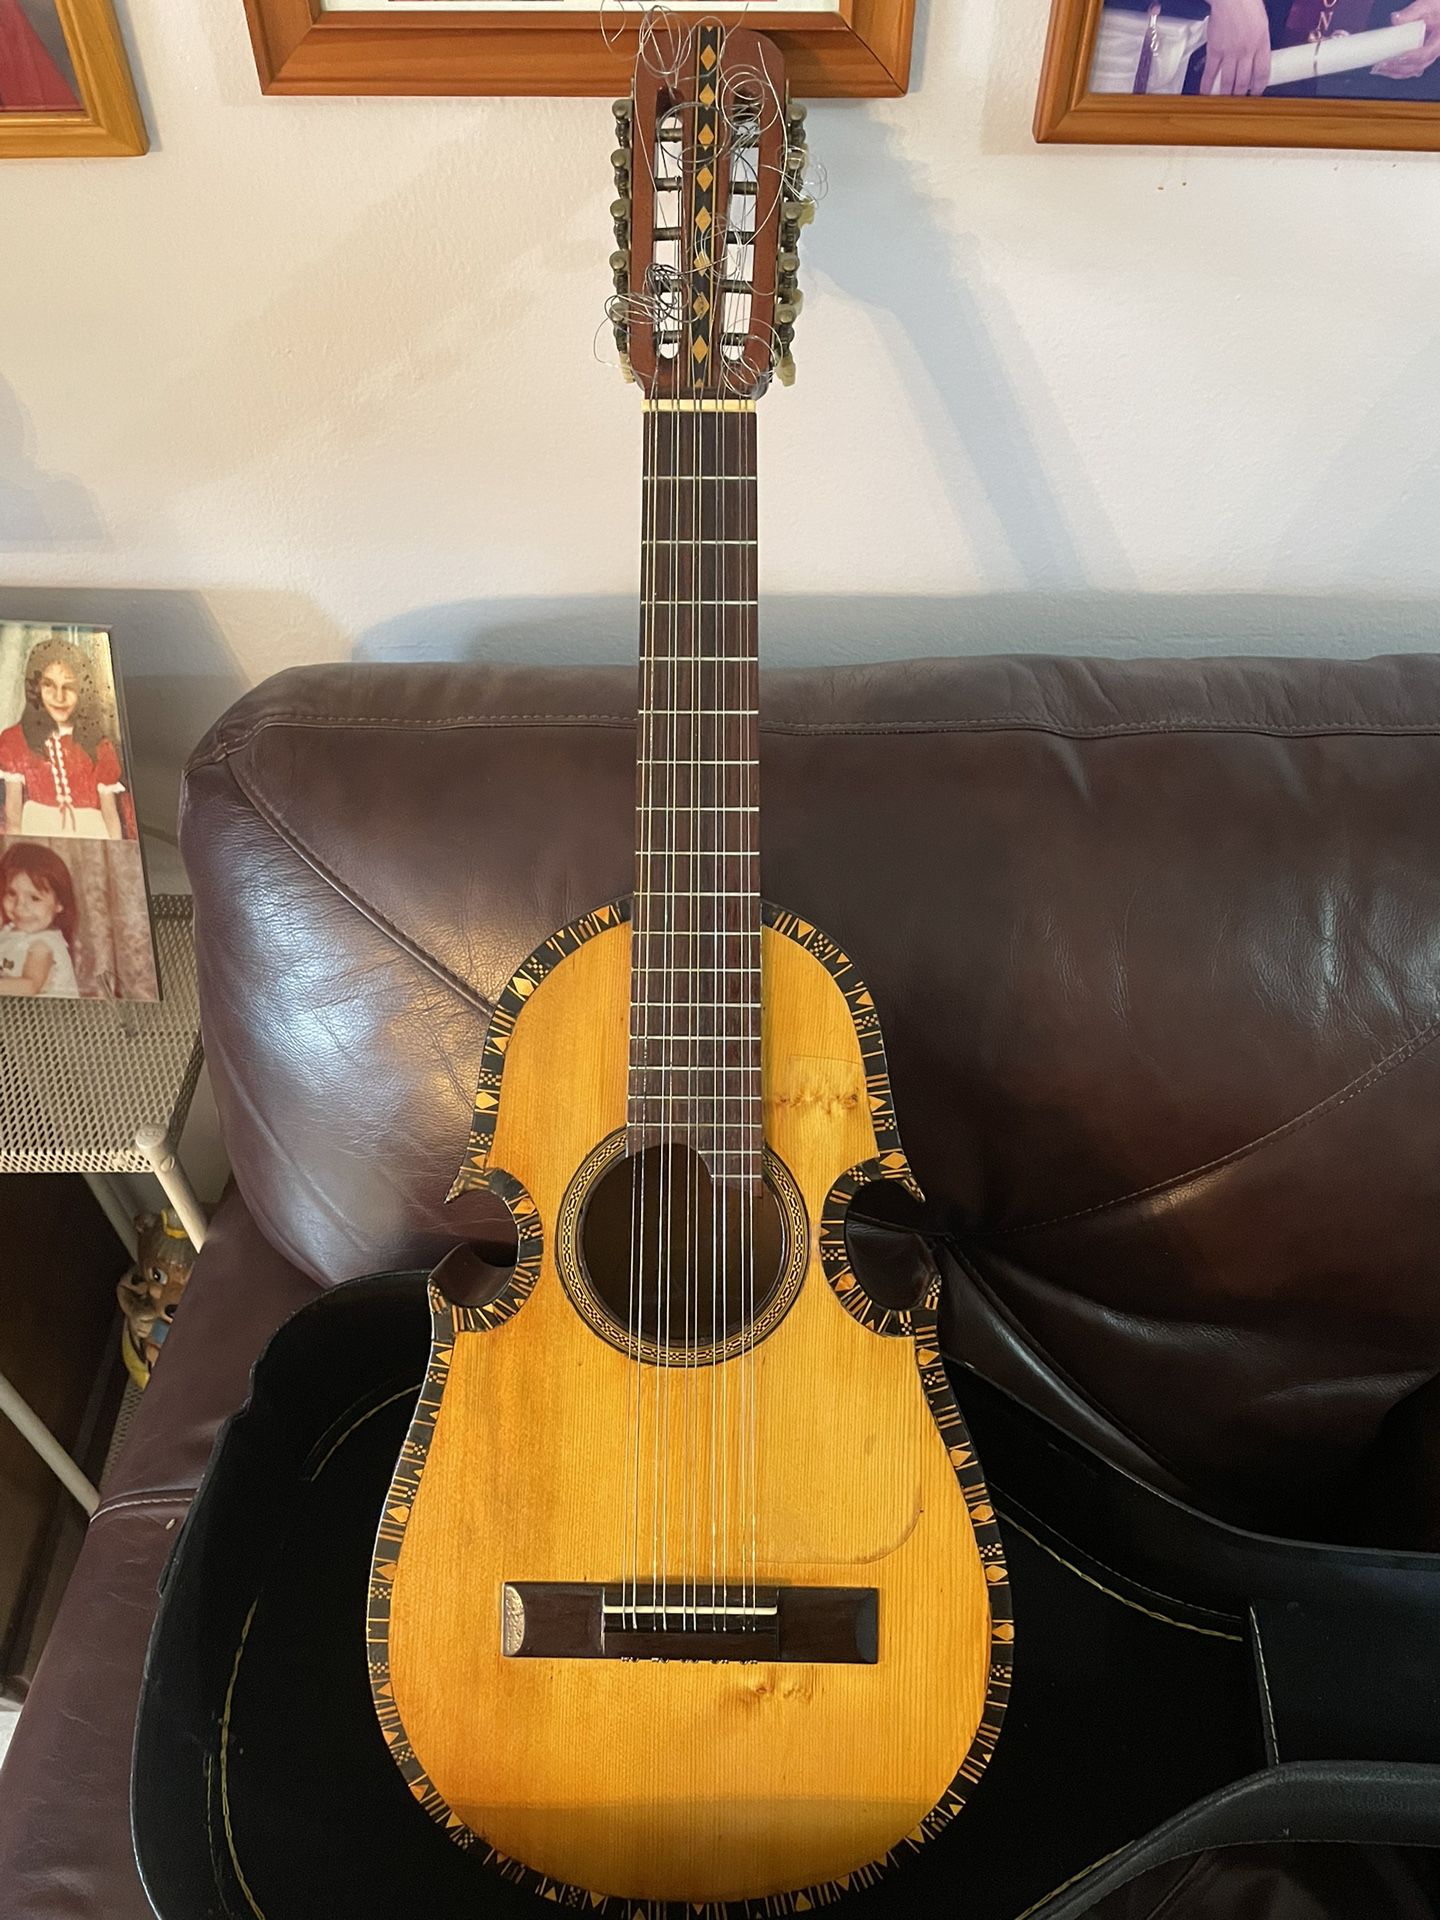 Puerto Rico handmade Cuatro guitar